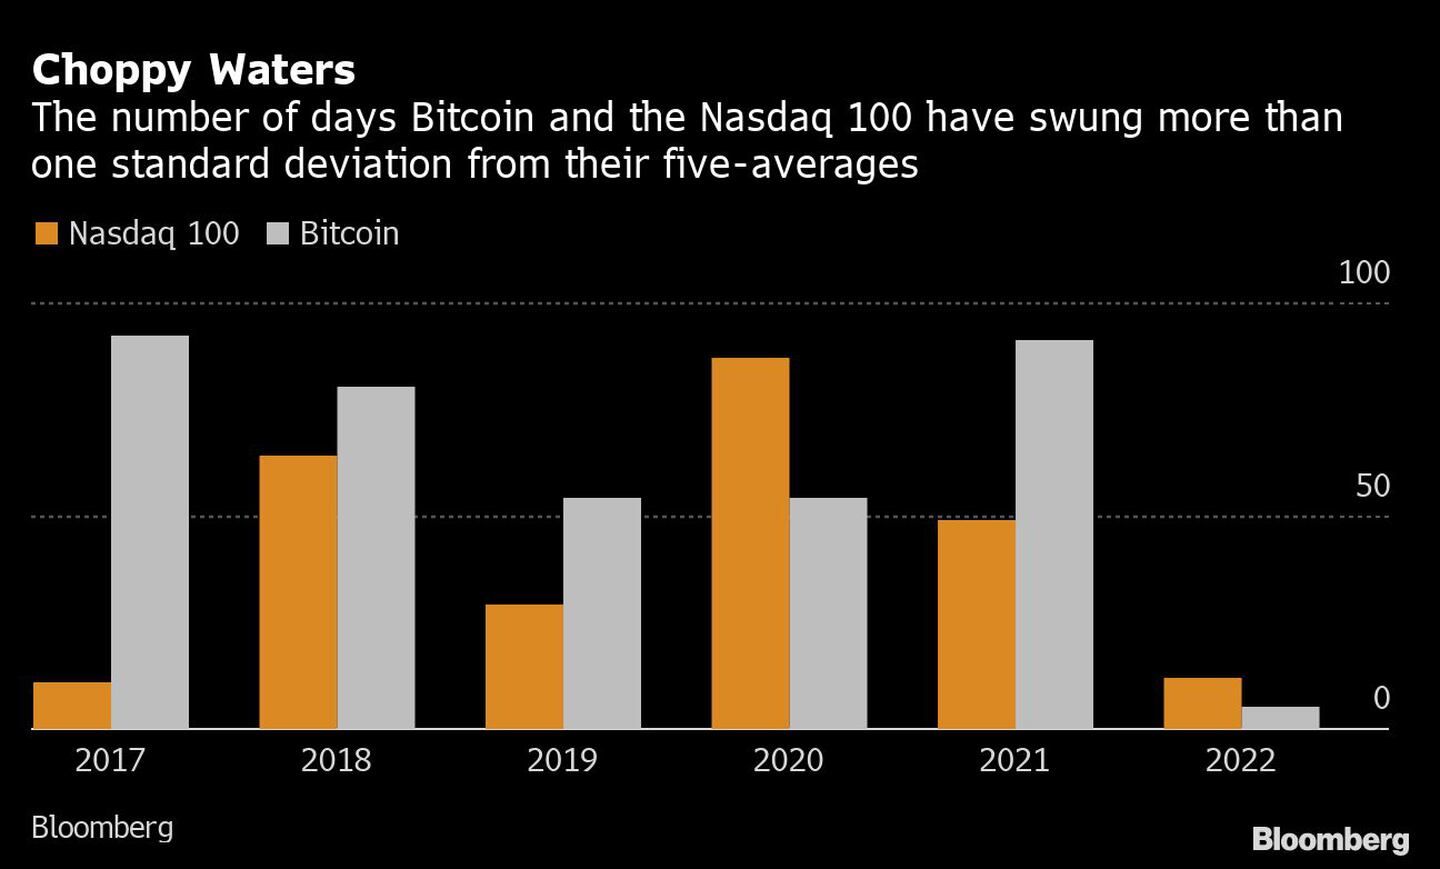 Aguas agitadas
Número de días en que el bitcoin y el Nasdaq 100 se han alejado más de una desviación estándar de sus cinco medias
Naranja: Nasdaq 100
Blanco: bitcoindfd